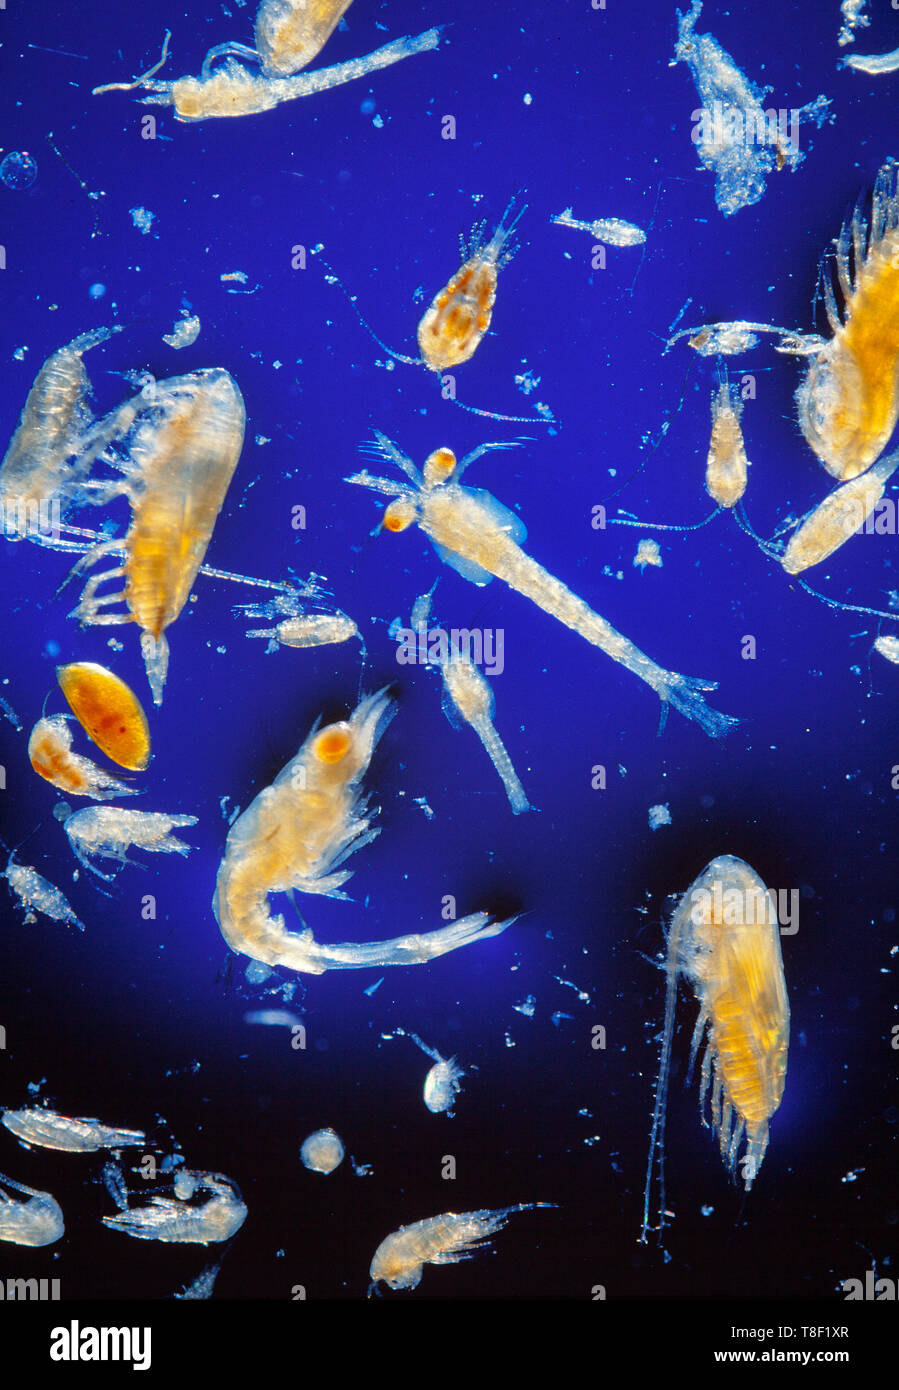 Le plancton marin, mélange d'espèces, sur fond bleu Banque D'Images